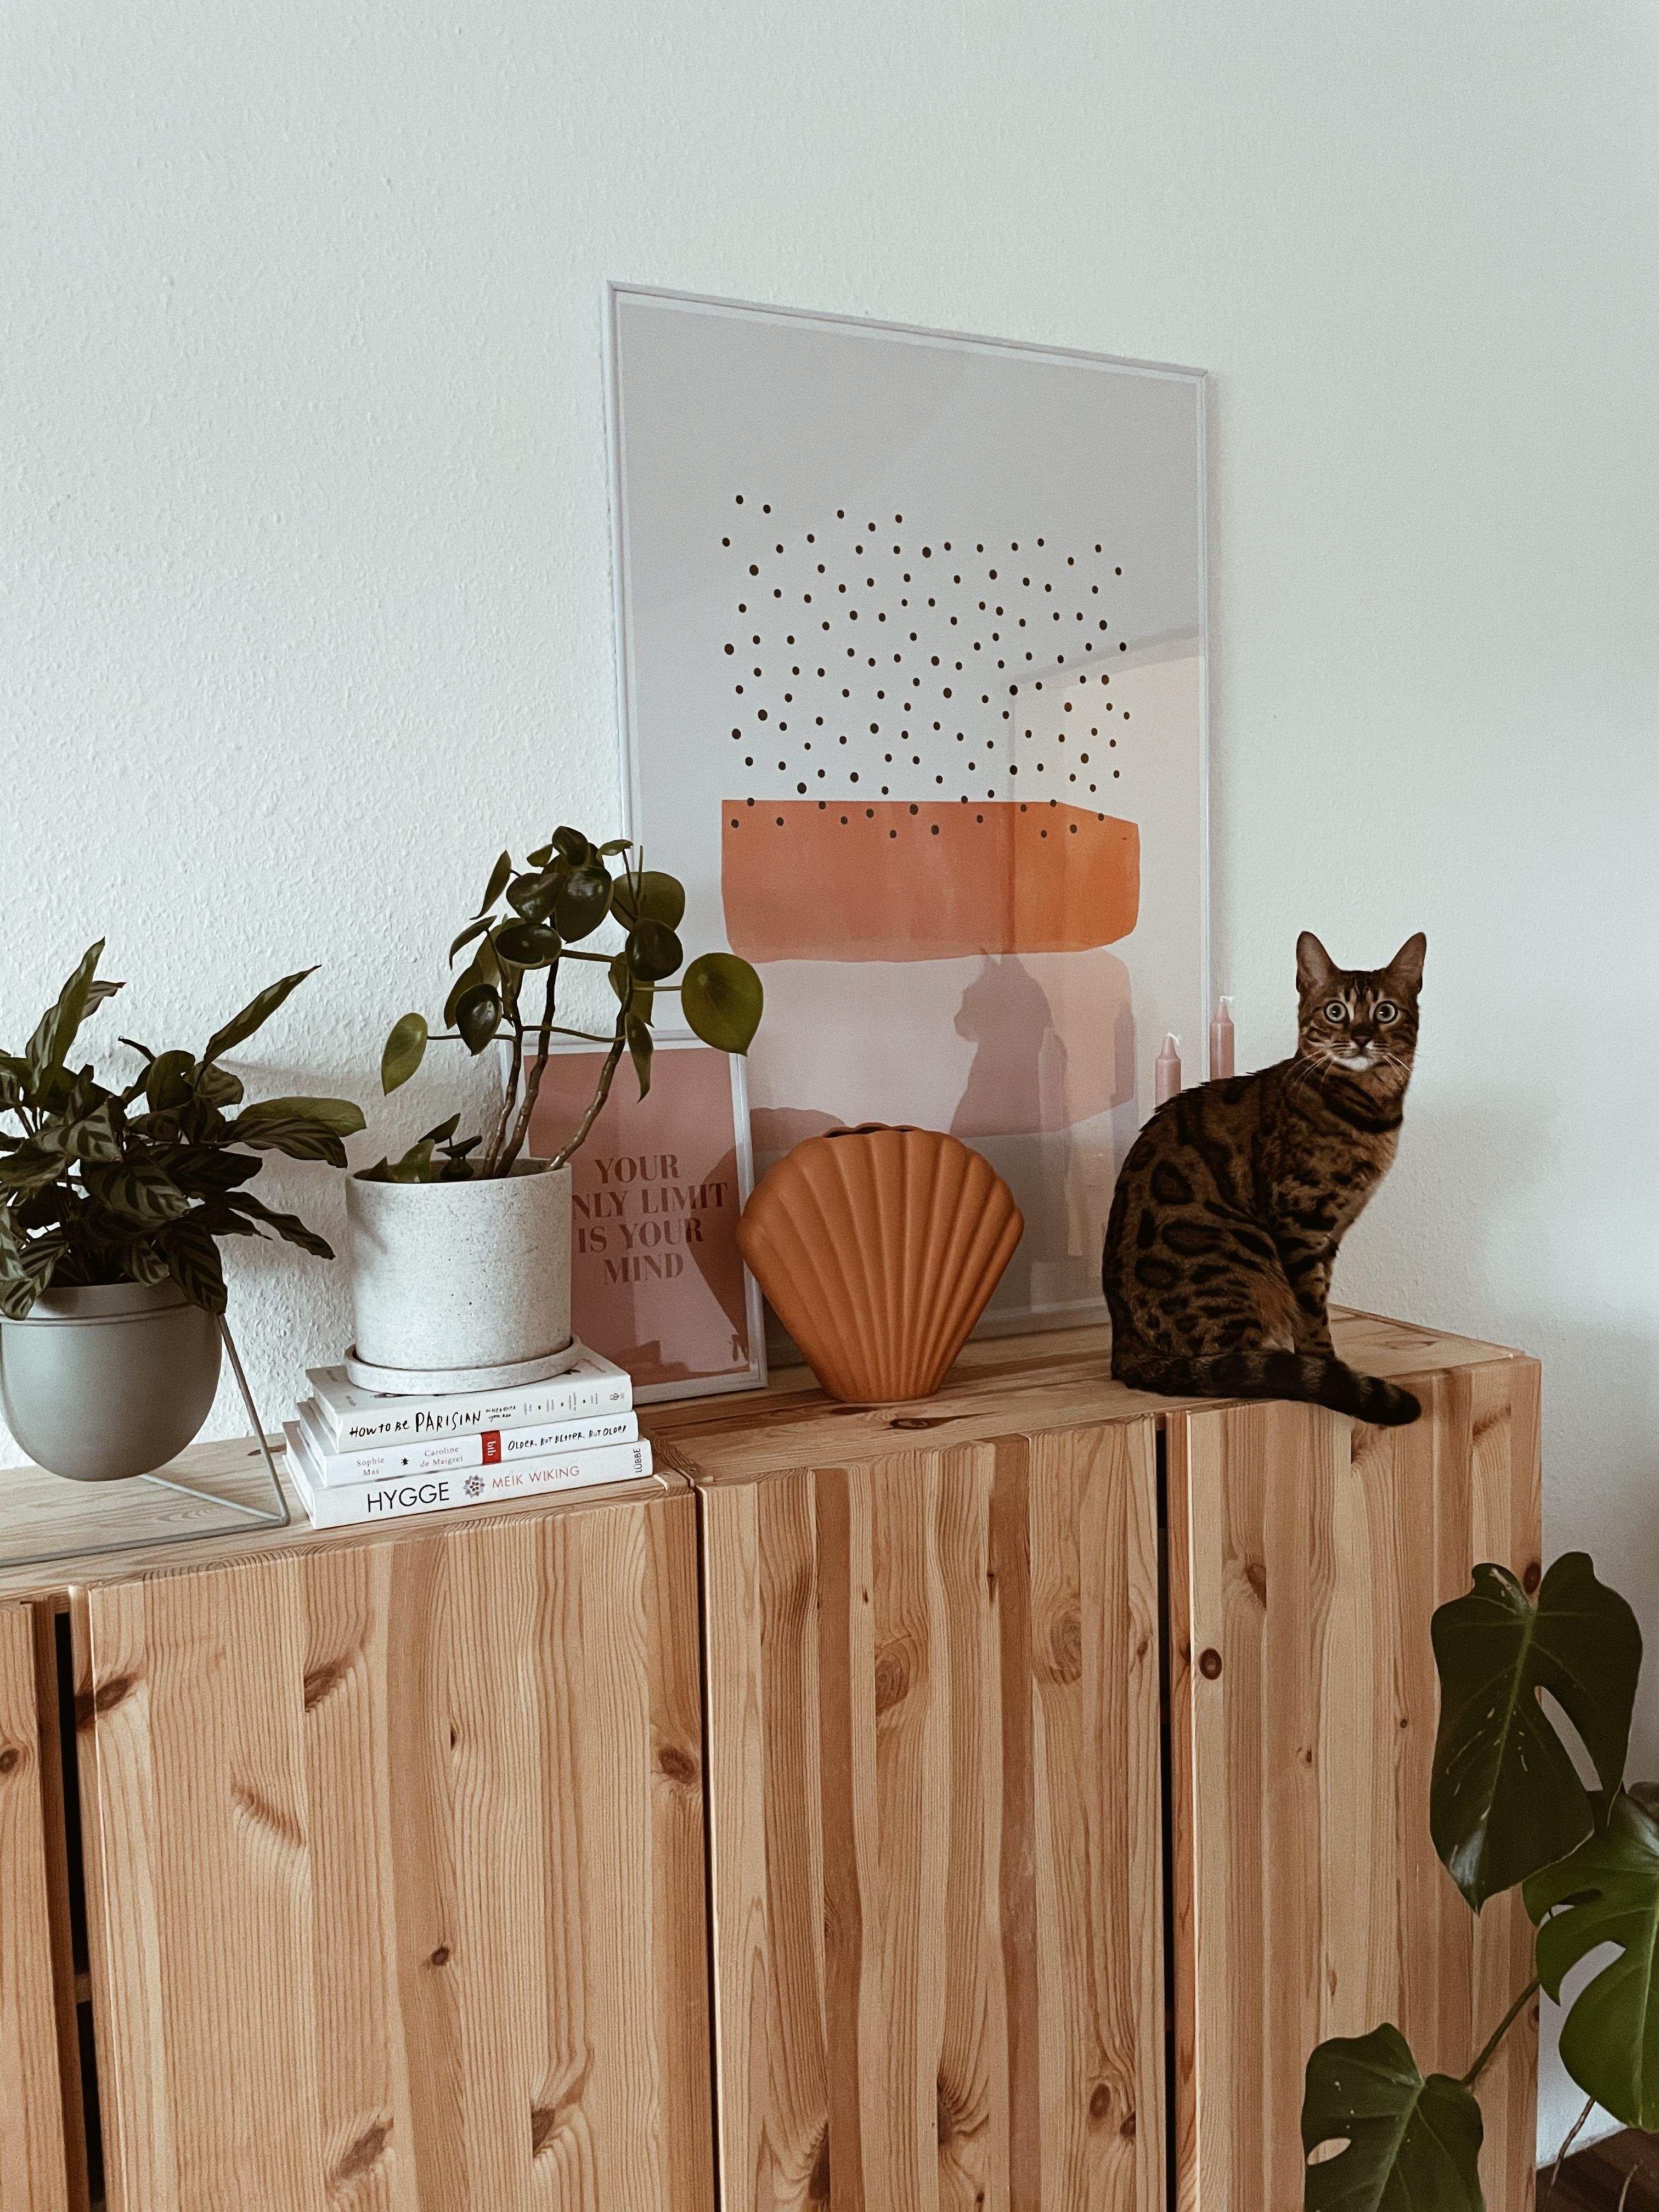 Wohnzimmer-Lieblinge 🧡
#wohnzimmer #farbenfroh #couchstyle #livingroom #plants #catmom 